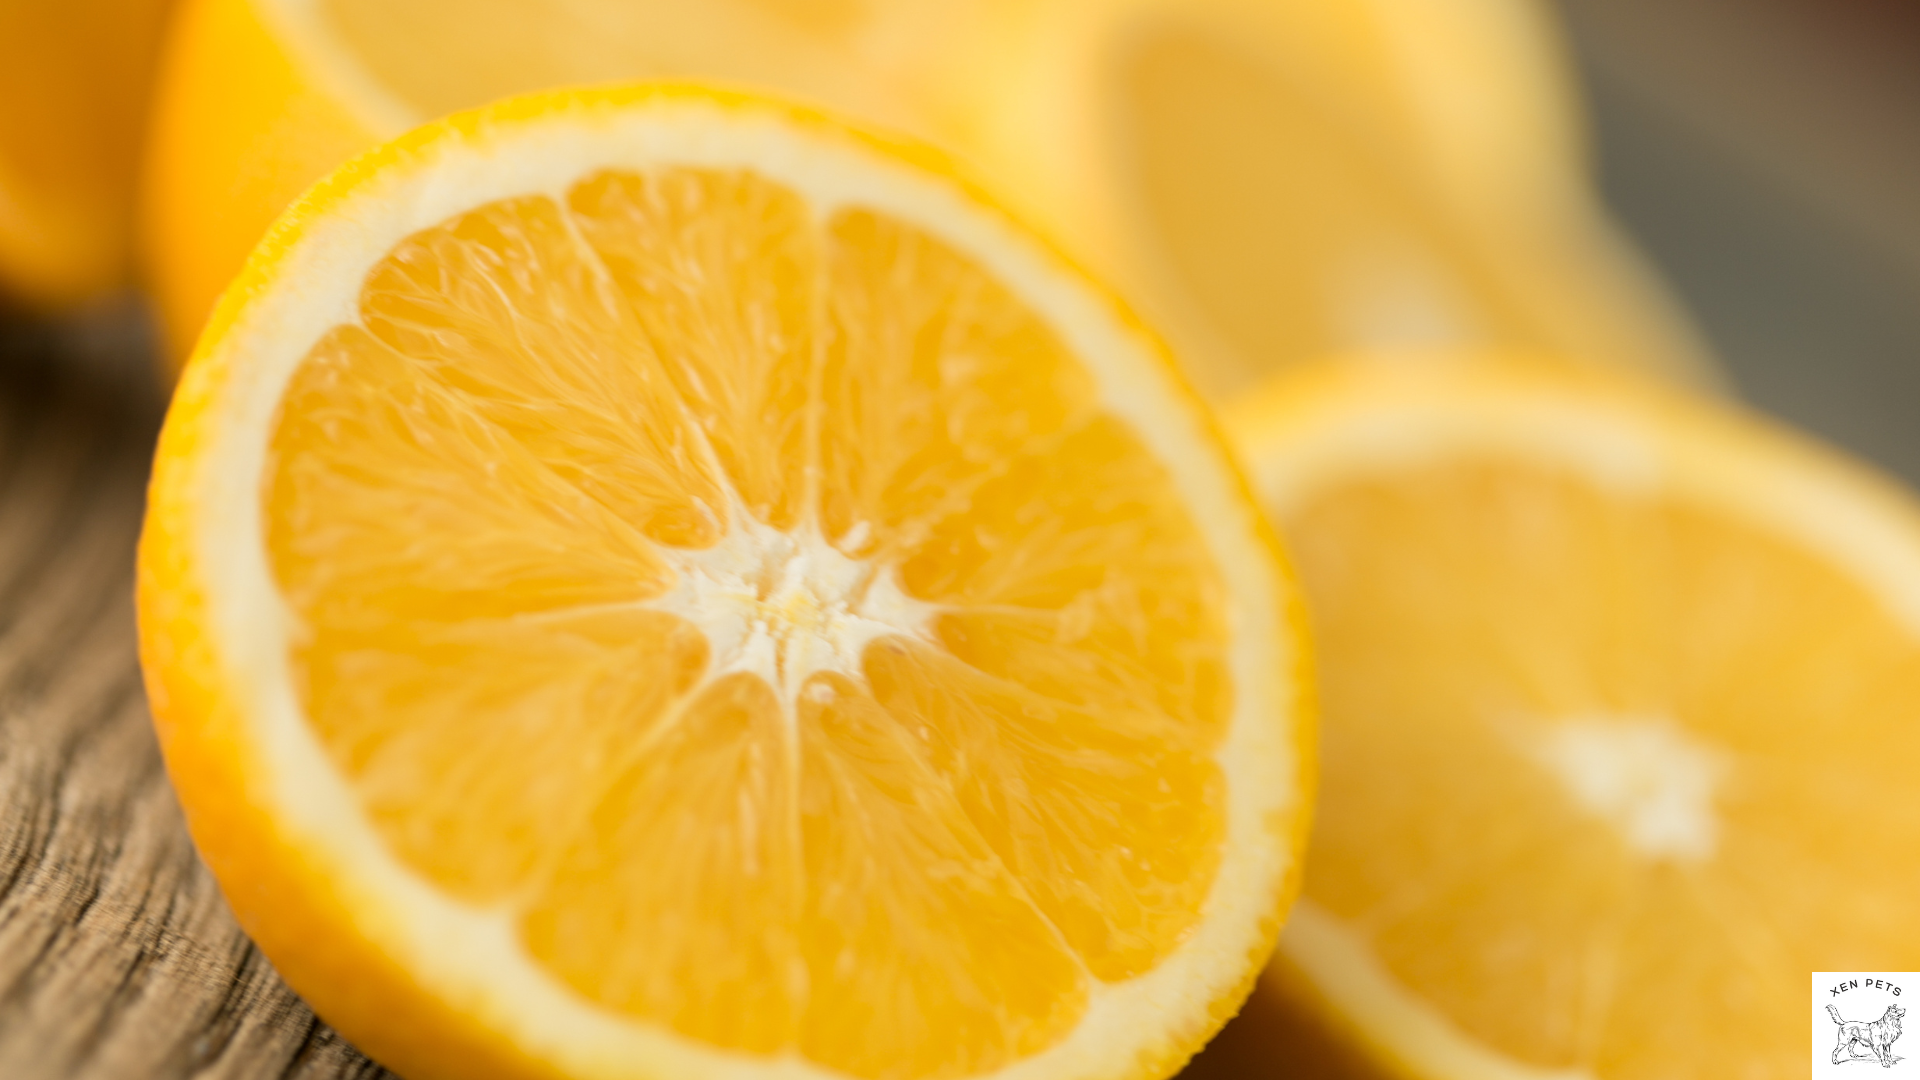 Oranges have vitamin c